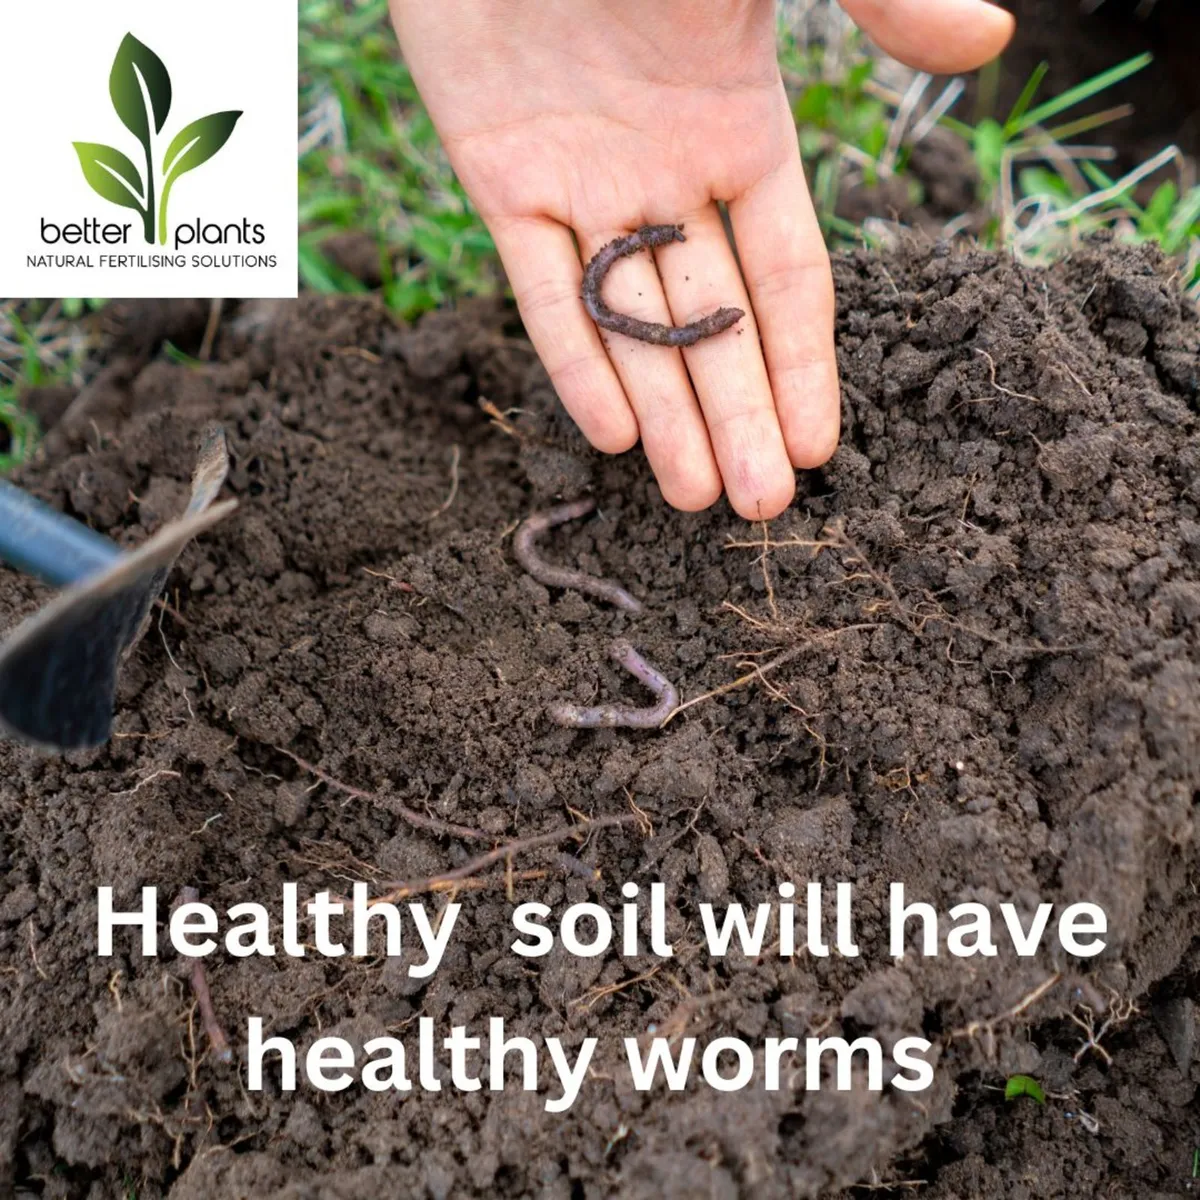 Improve soil fertility, structure & worms